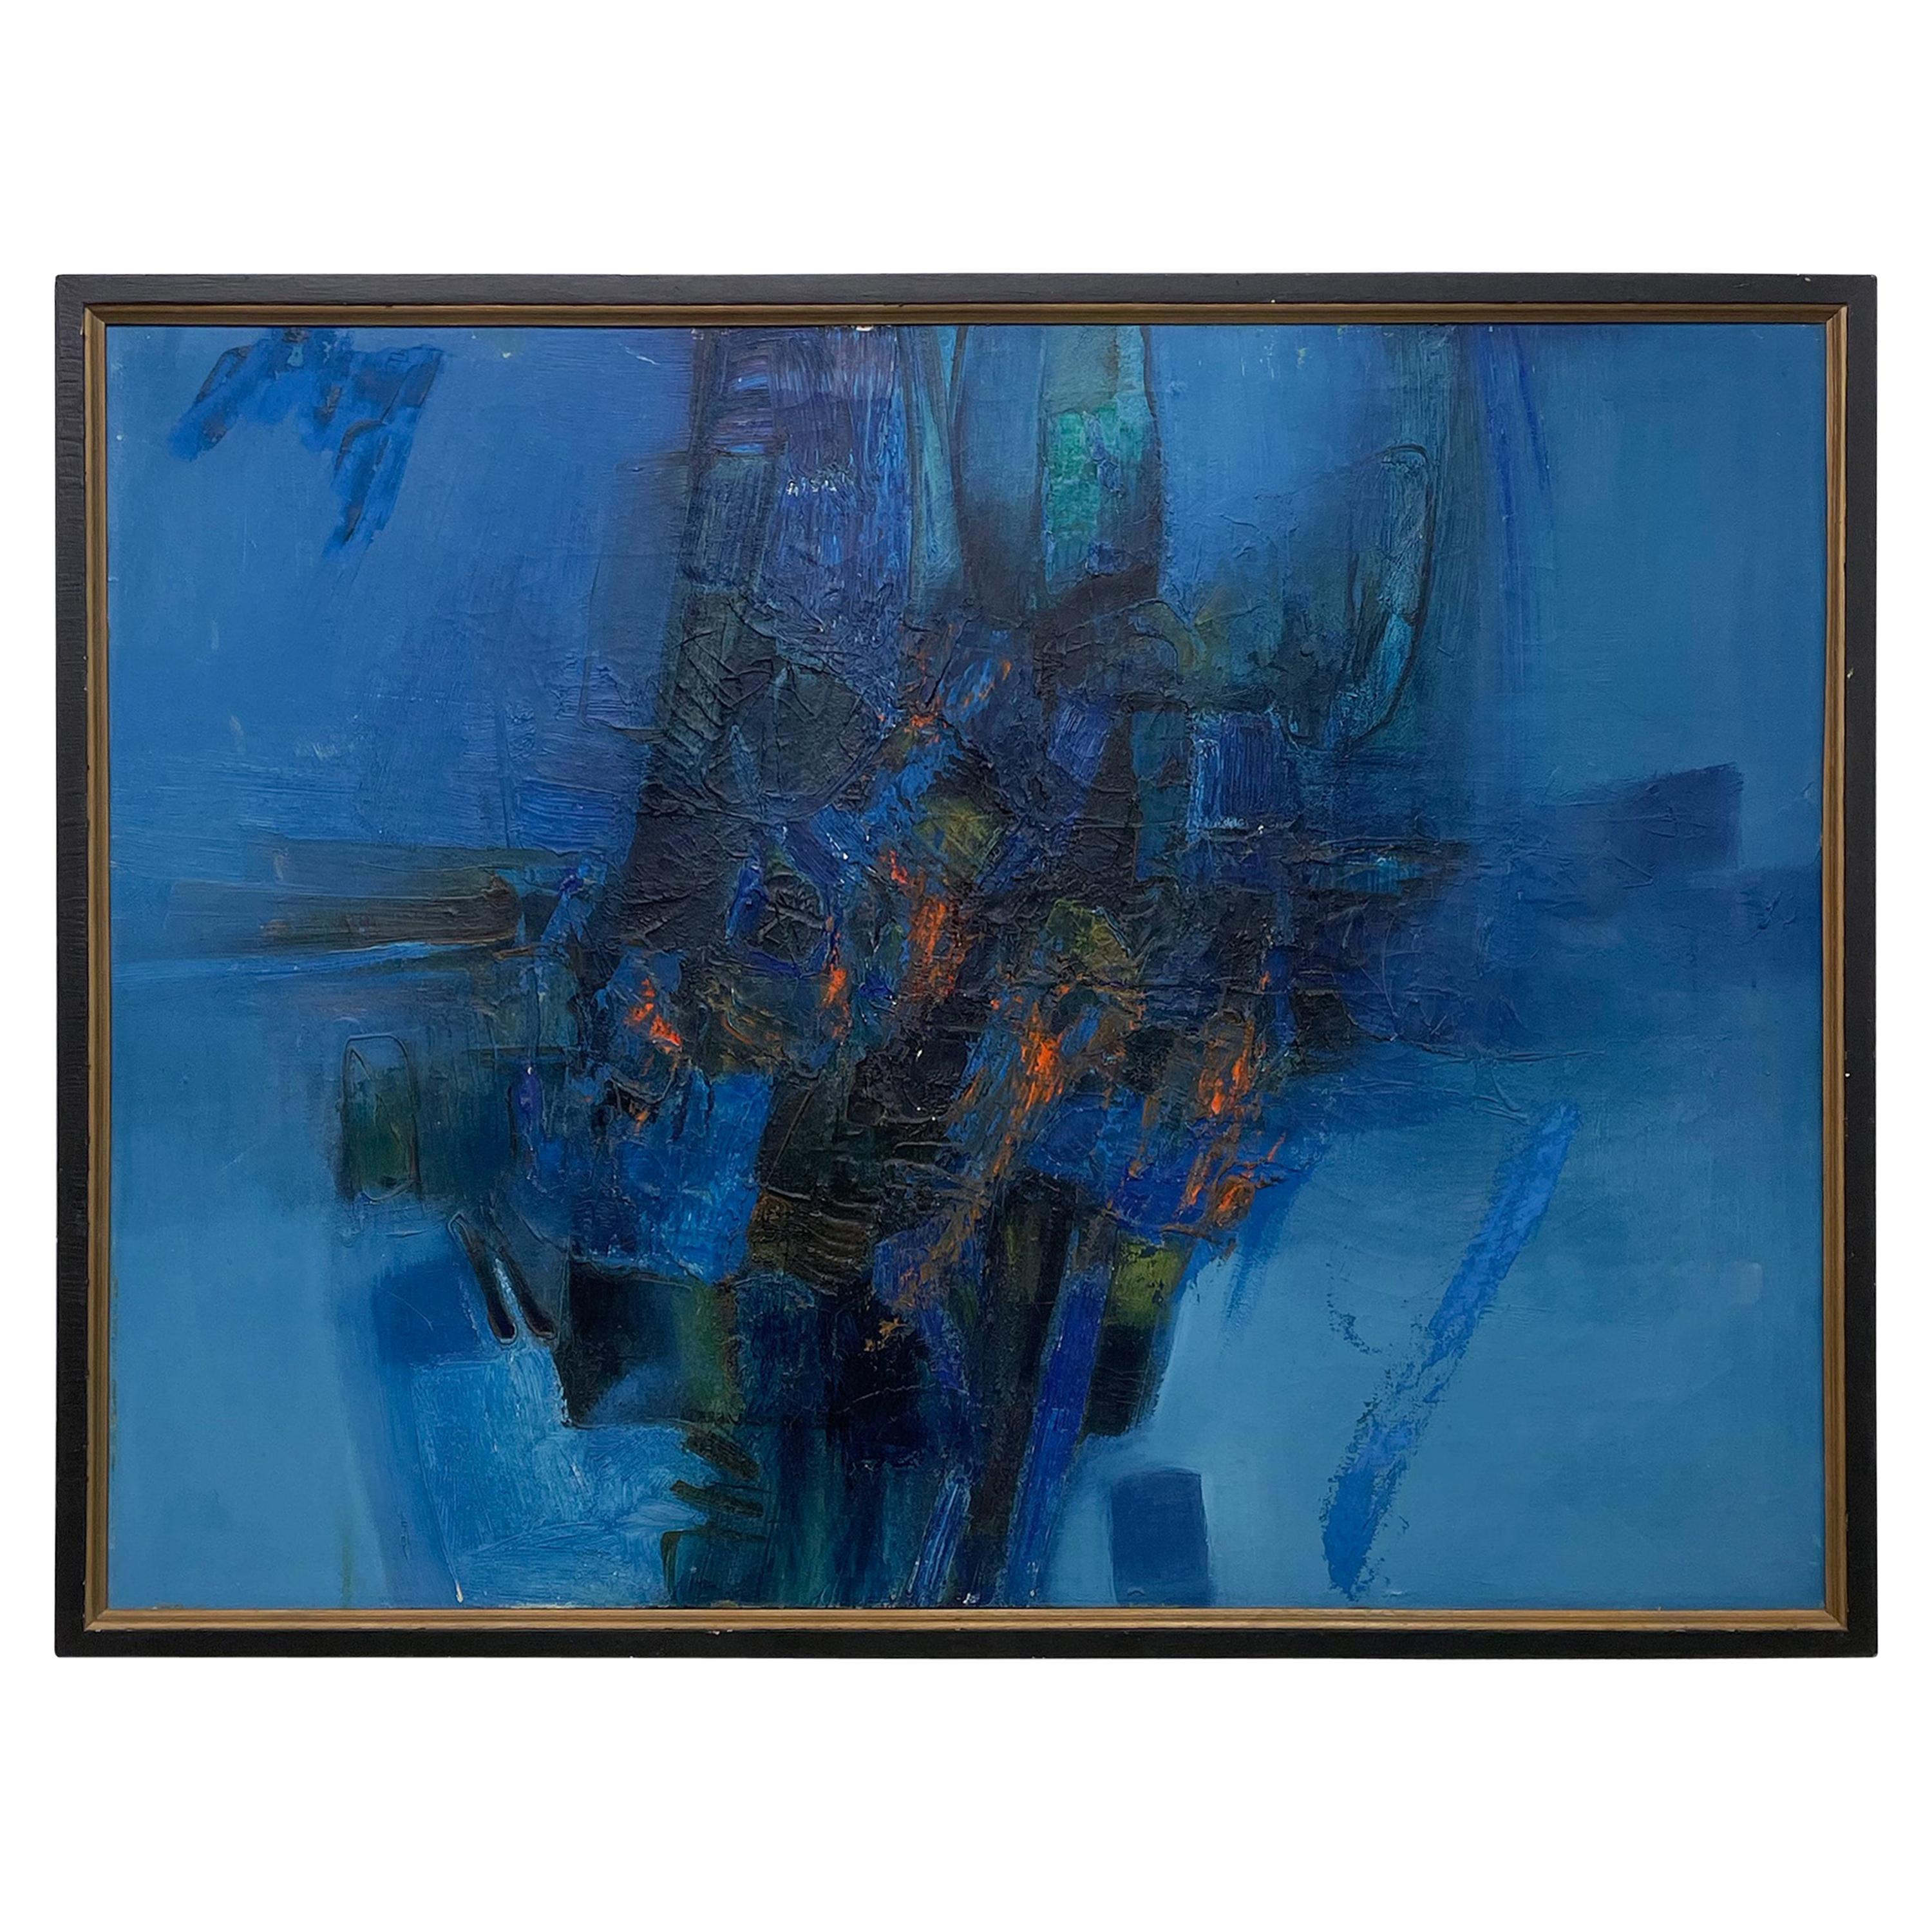 1985 Modernes Gemälde Abstrakte Kunst Blau Öl auf Leinwand signiert 